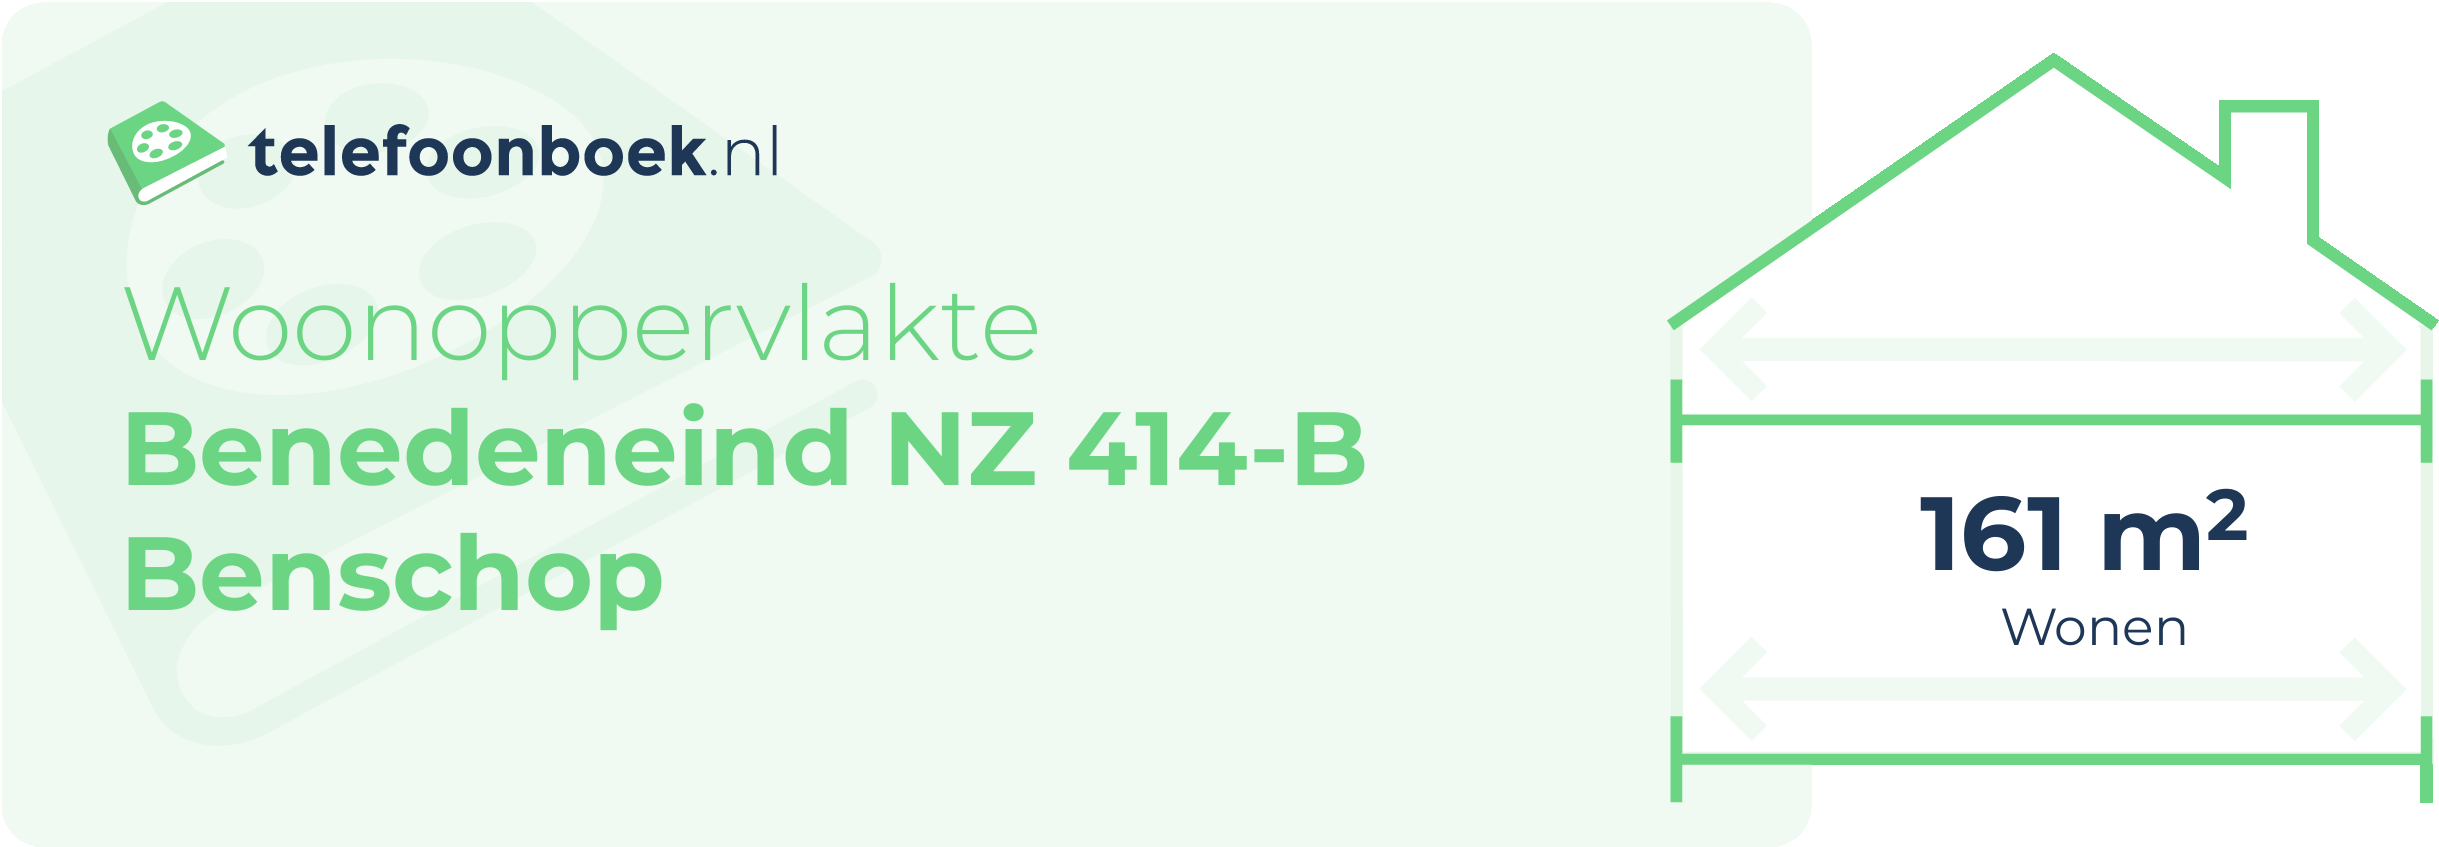 Woonoppervlakte Benedeneind NZ 414-B Benschop